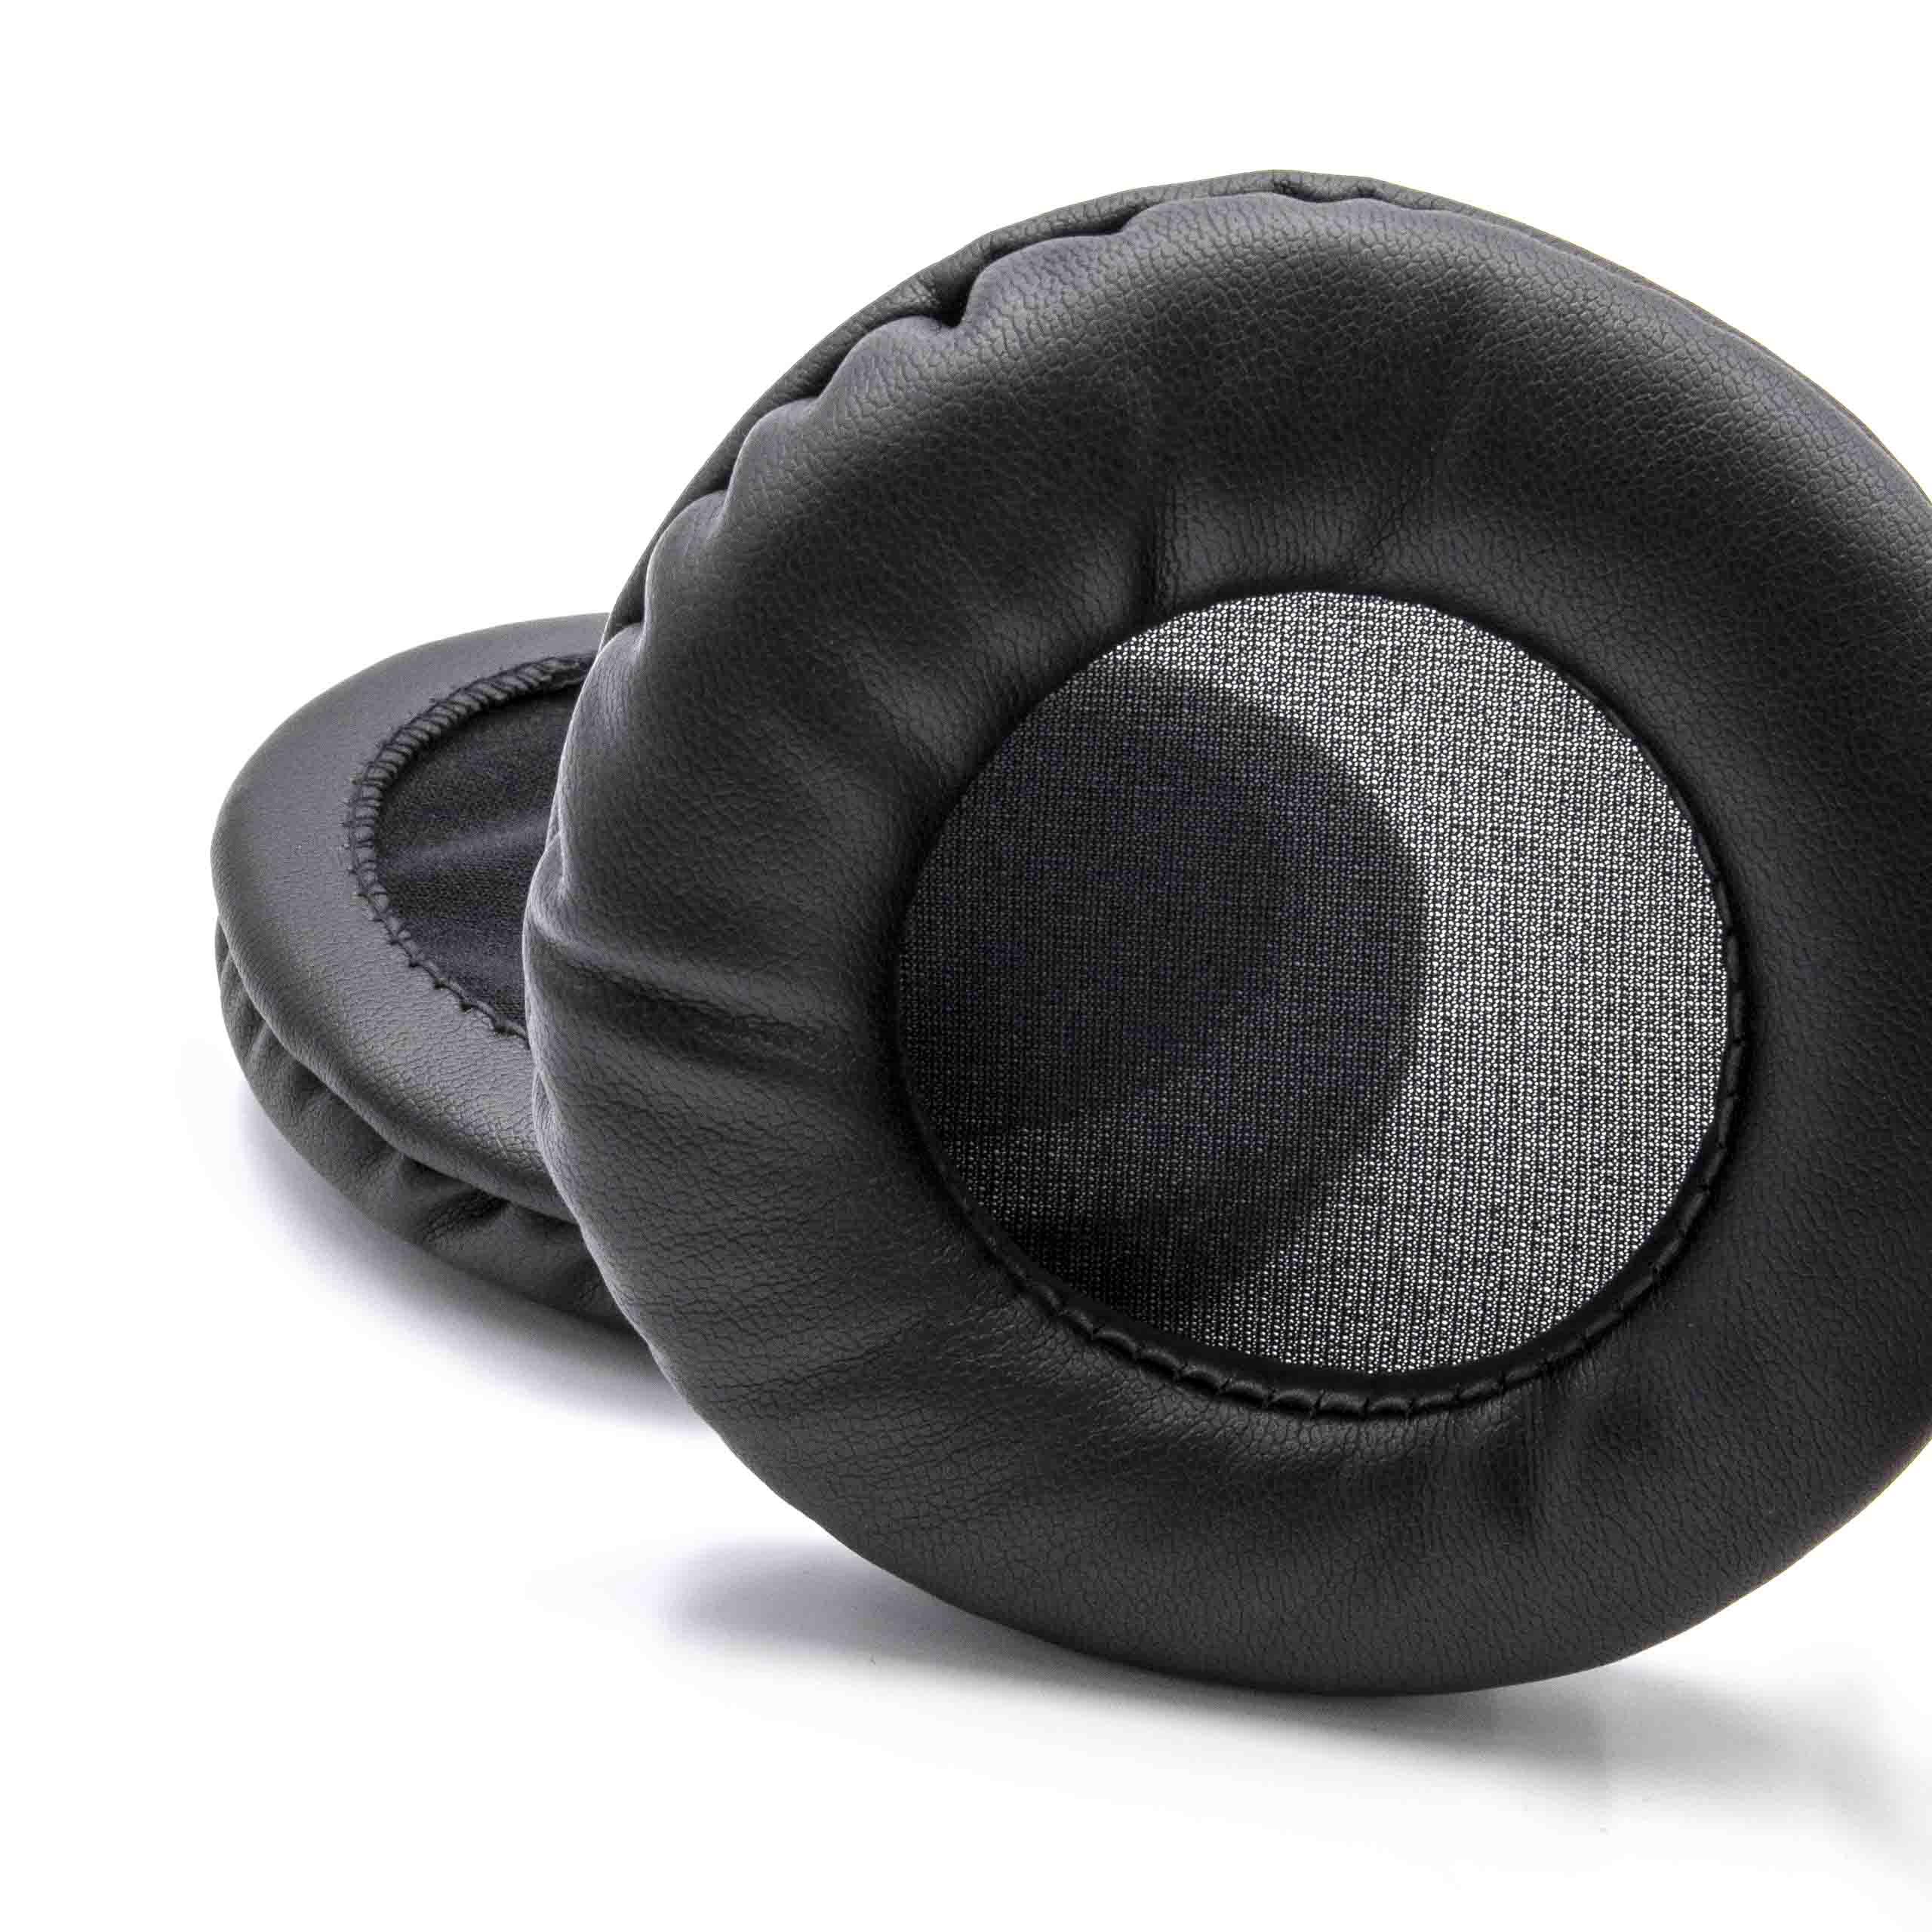 2x Ohrenpolster passend für AKG HSC-271 Kopfhörer u.a. - Polyurethan, 10 cm Außendurchmesser, Schwarz